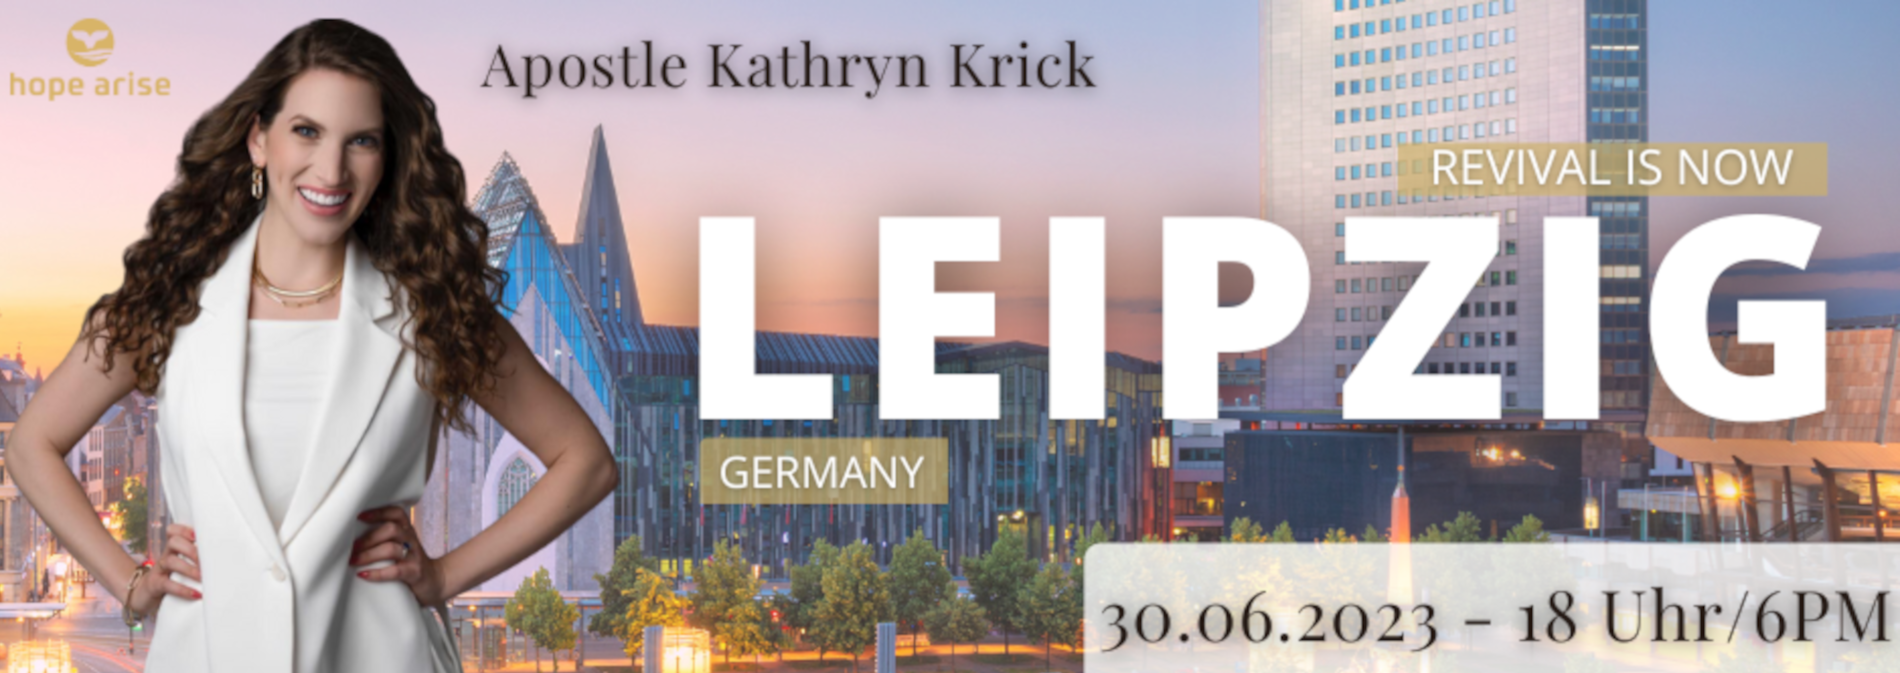 Apostle Kathryn Krick in Germany Leipzig 30.06.2023 cvents